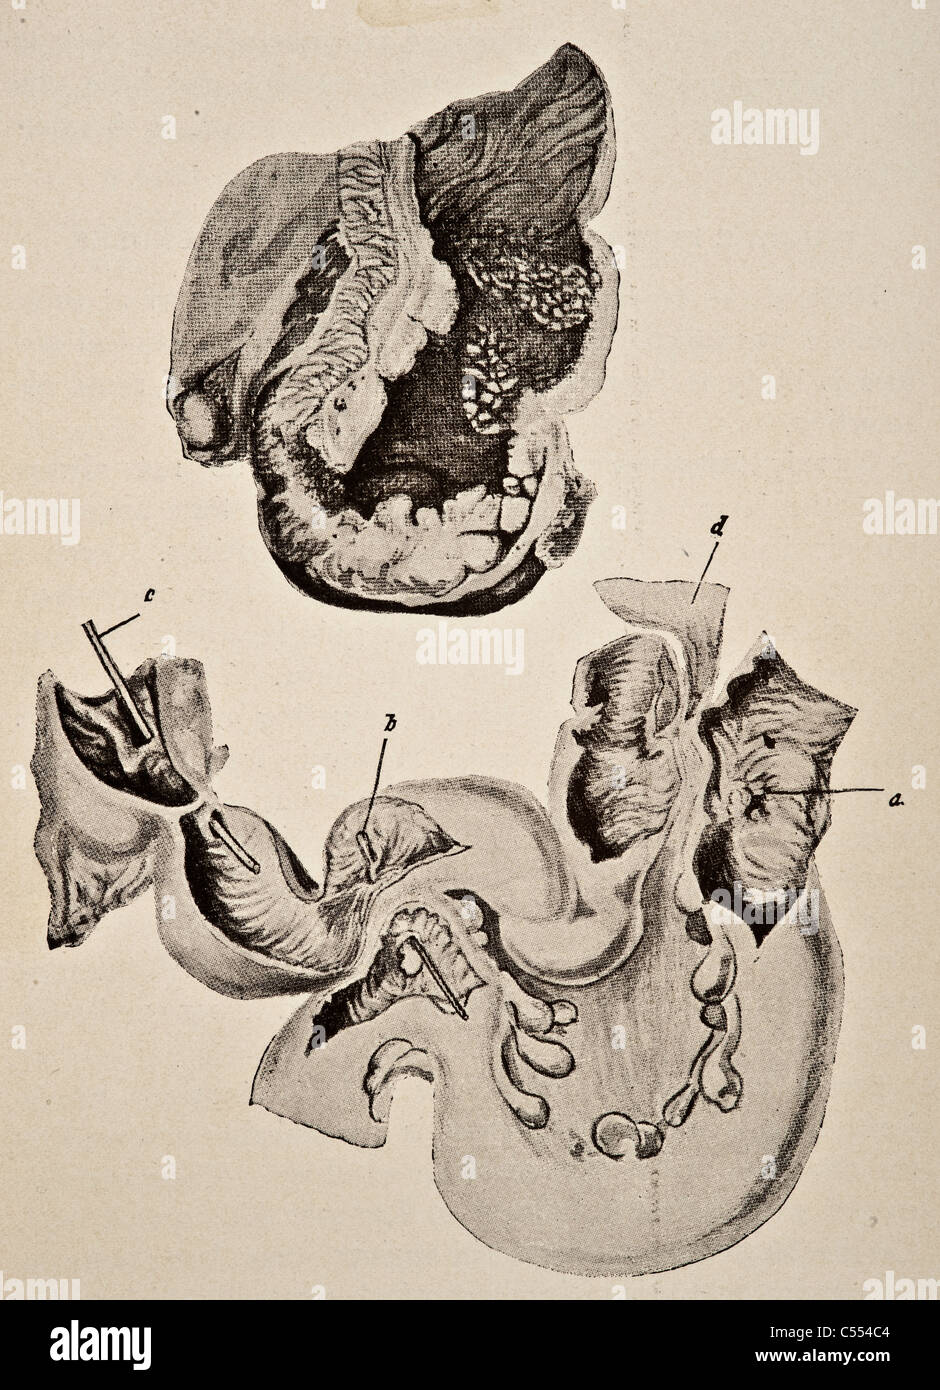 Anatomie des maladies y compris le cancer de l'intestin Banque D'Images